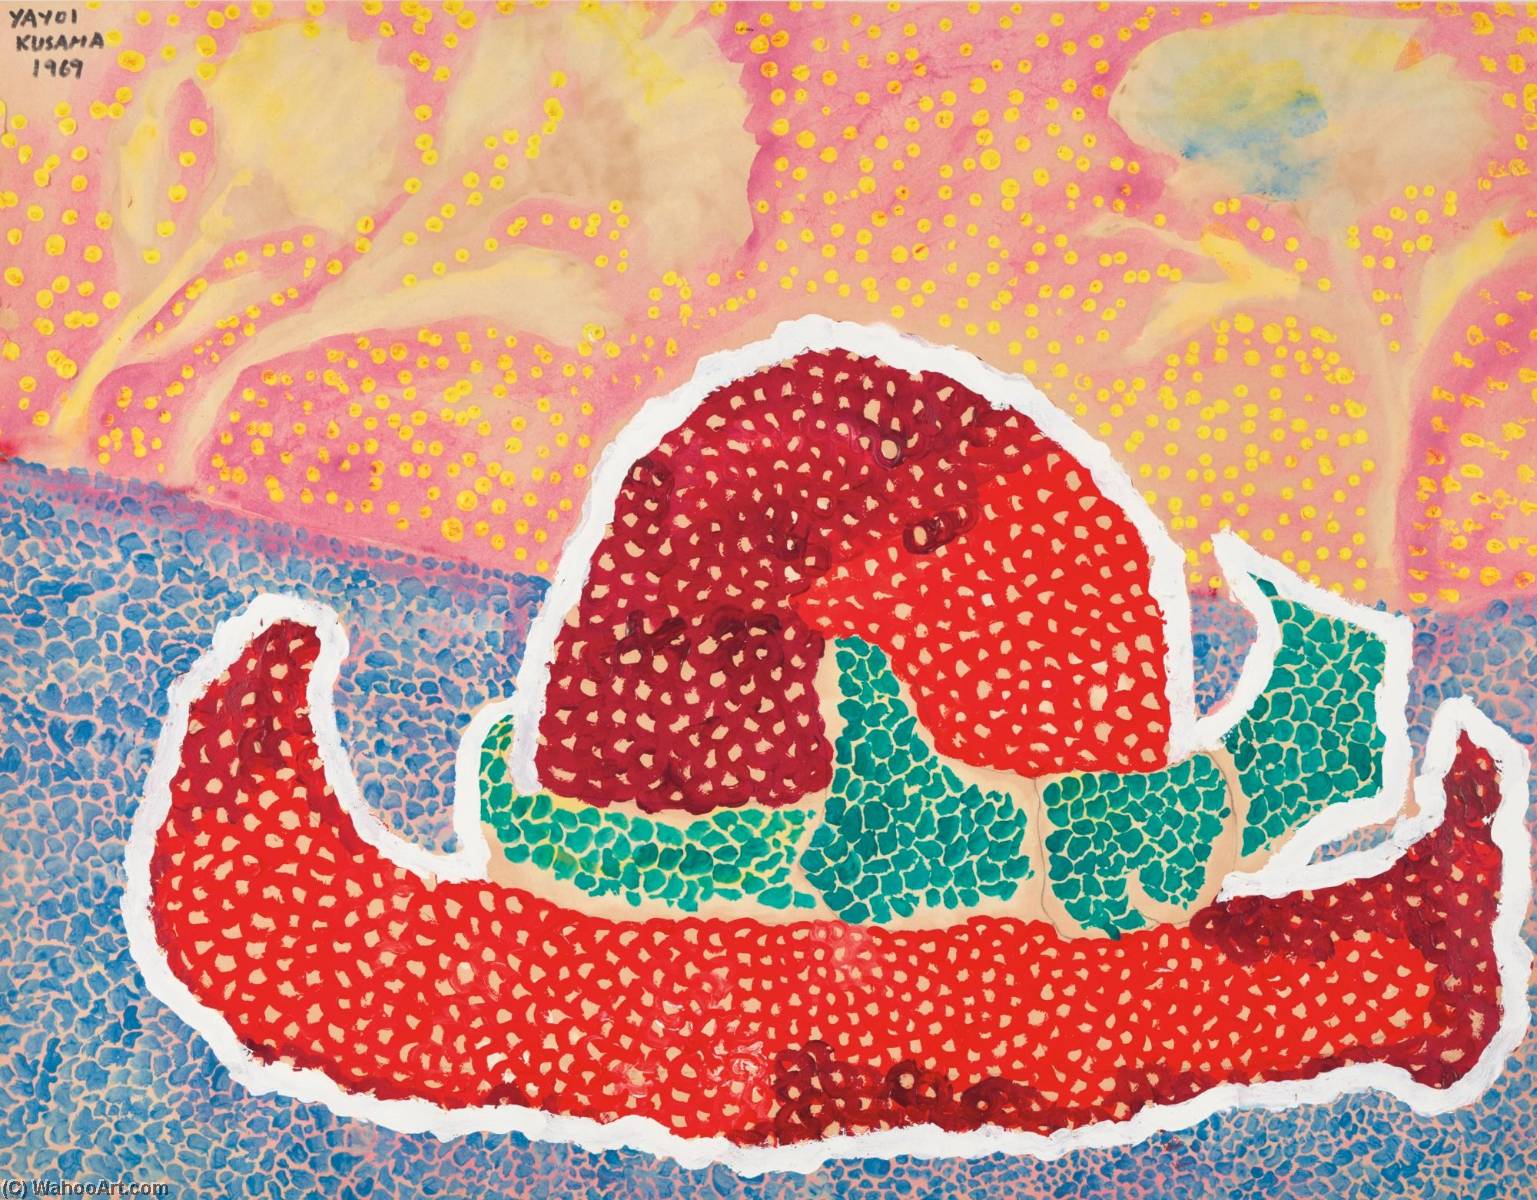 Wikioo.org - Bách khoa toàn thư về mỹ thuật - Vẽ tranh, Tác phẩm nghệ thuật Yayoi Kusama - Hat Left Behind in the Field